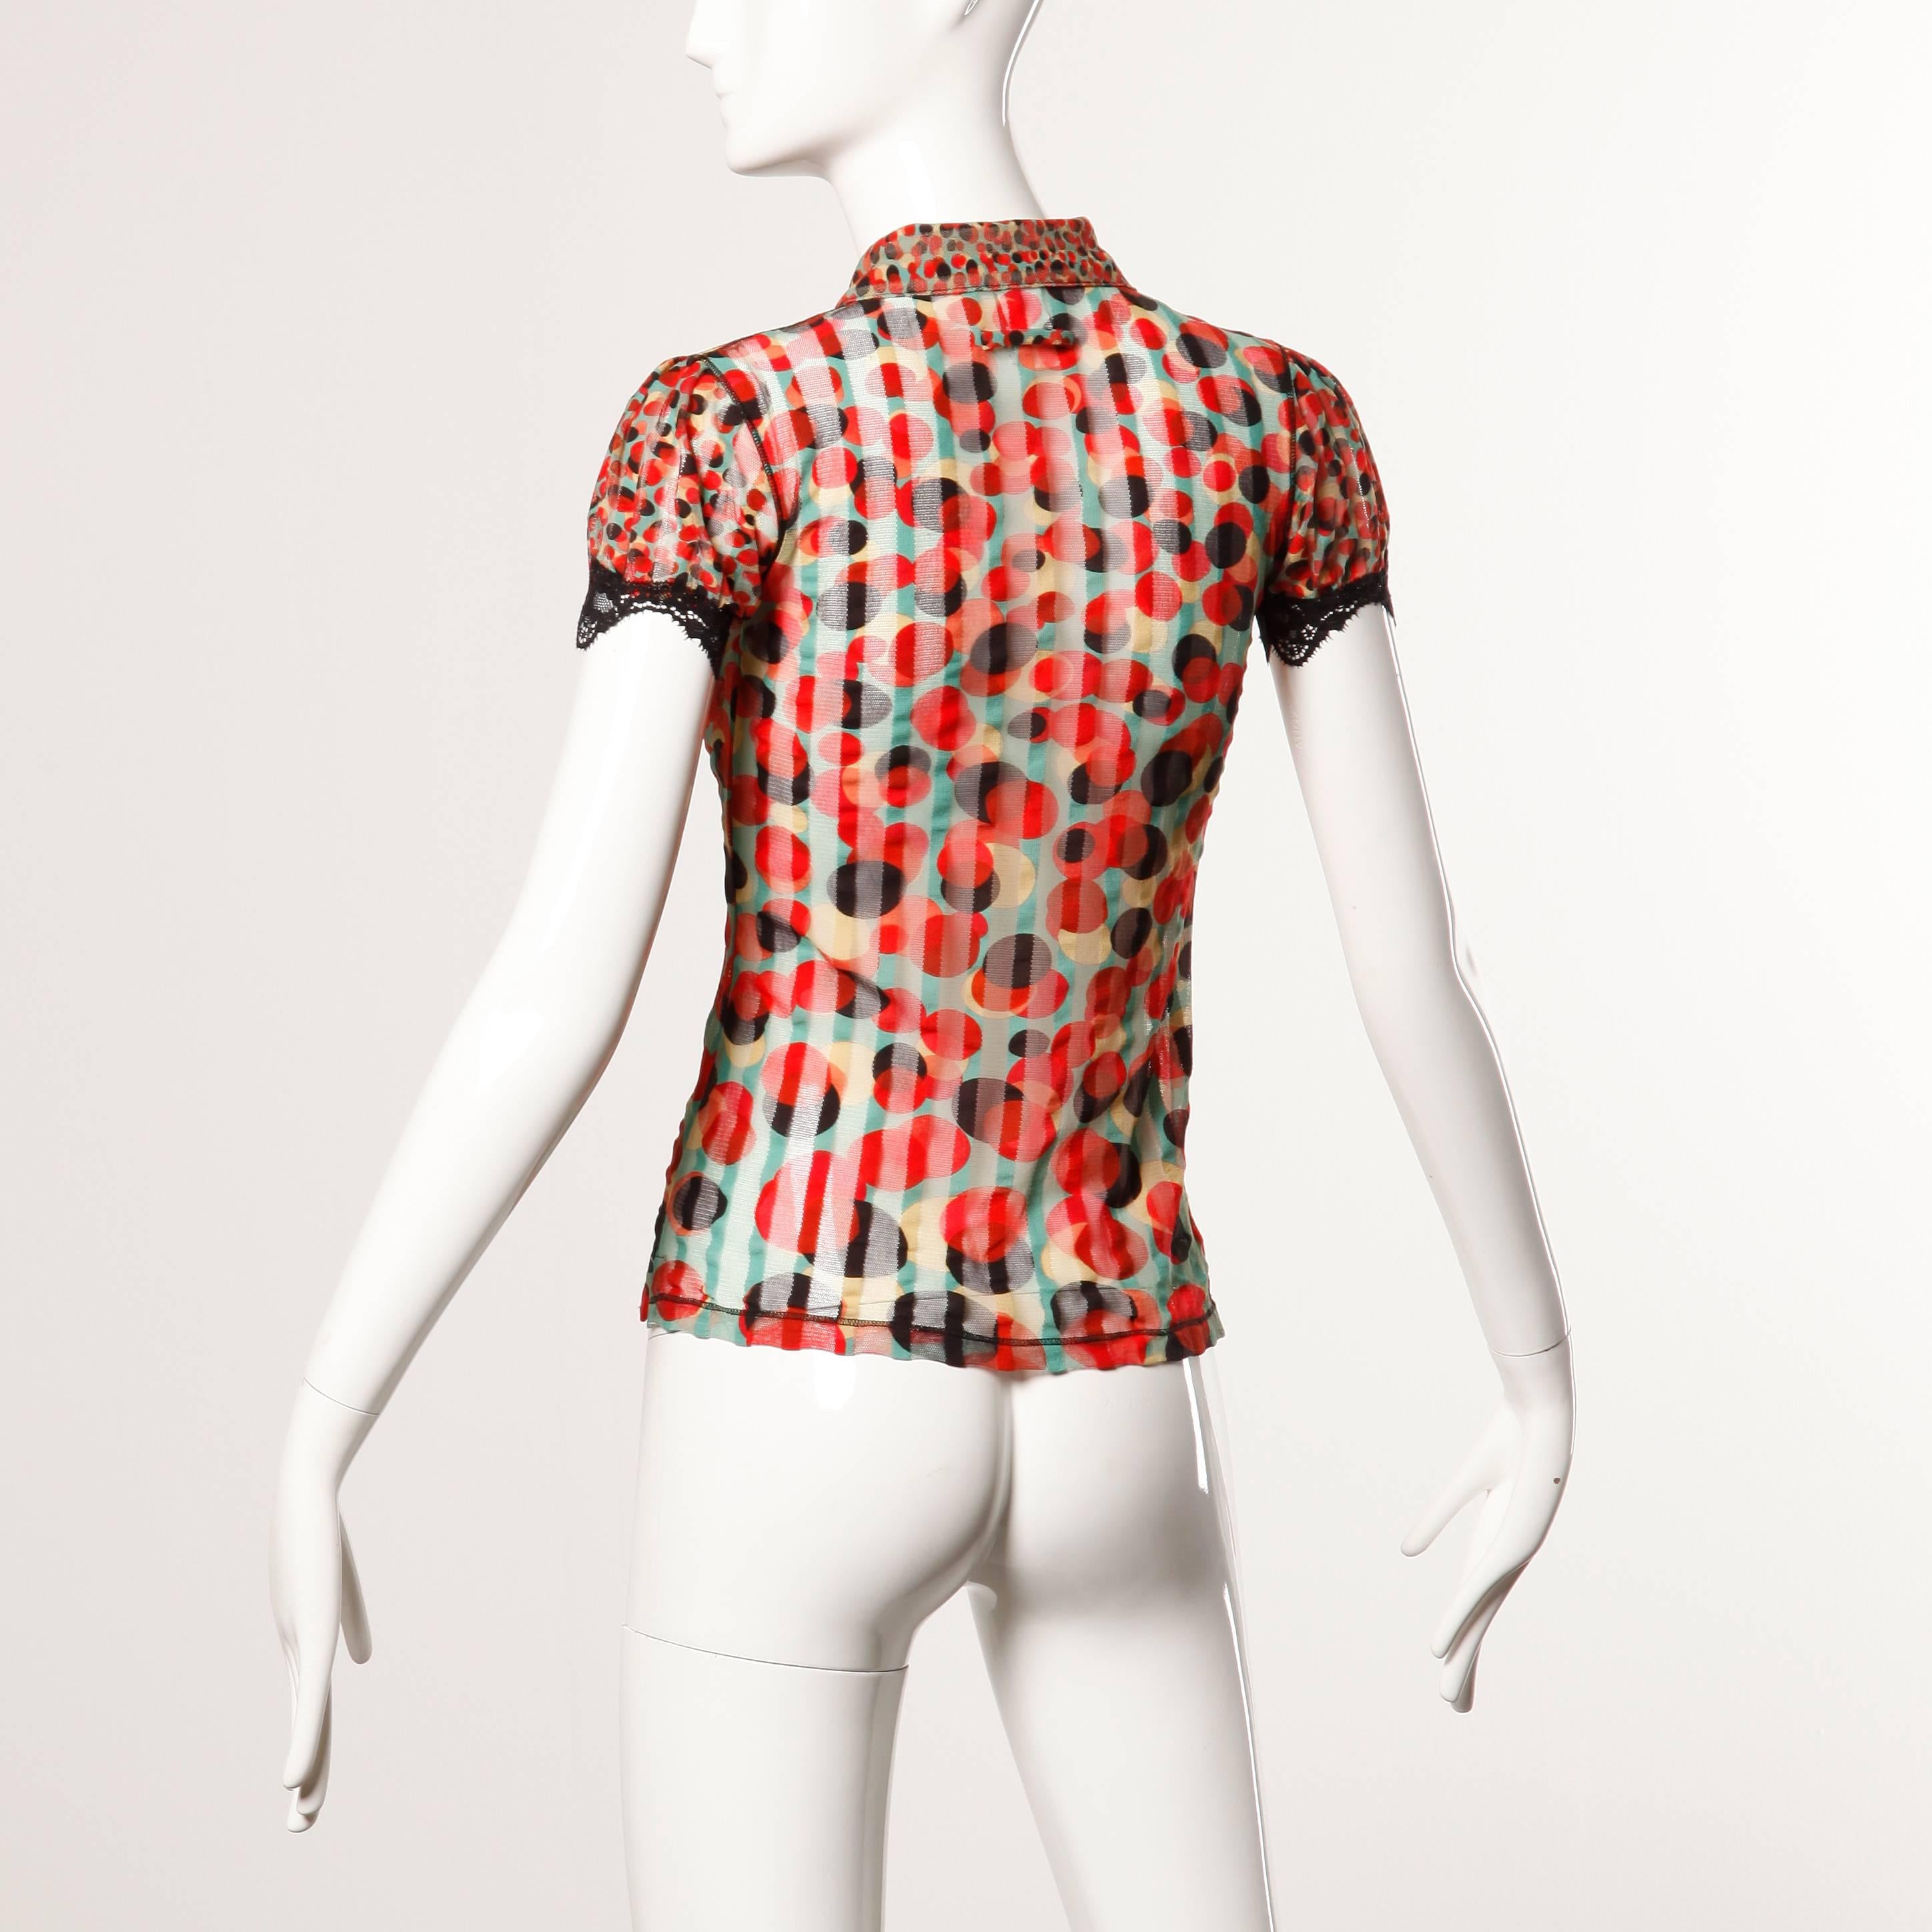 Brown Jean Paul Gaultier Vintage Sheer Mesh Op Art Polka Dot Print Top with Lace Trim